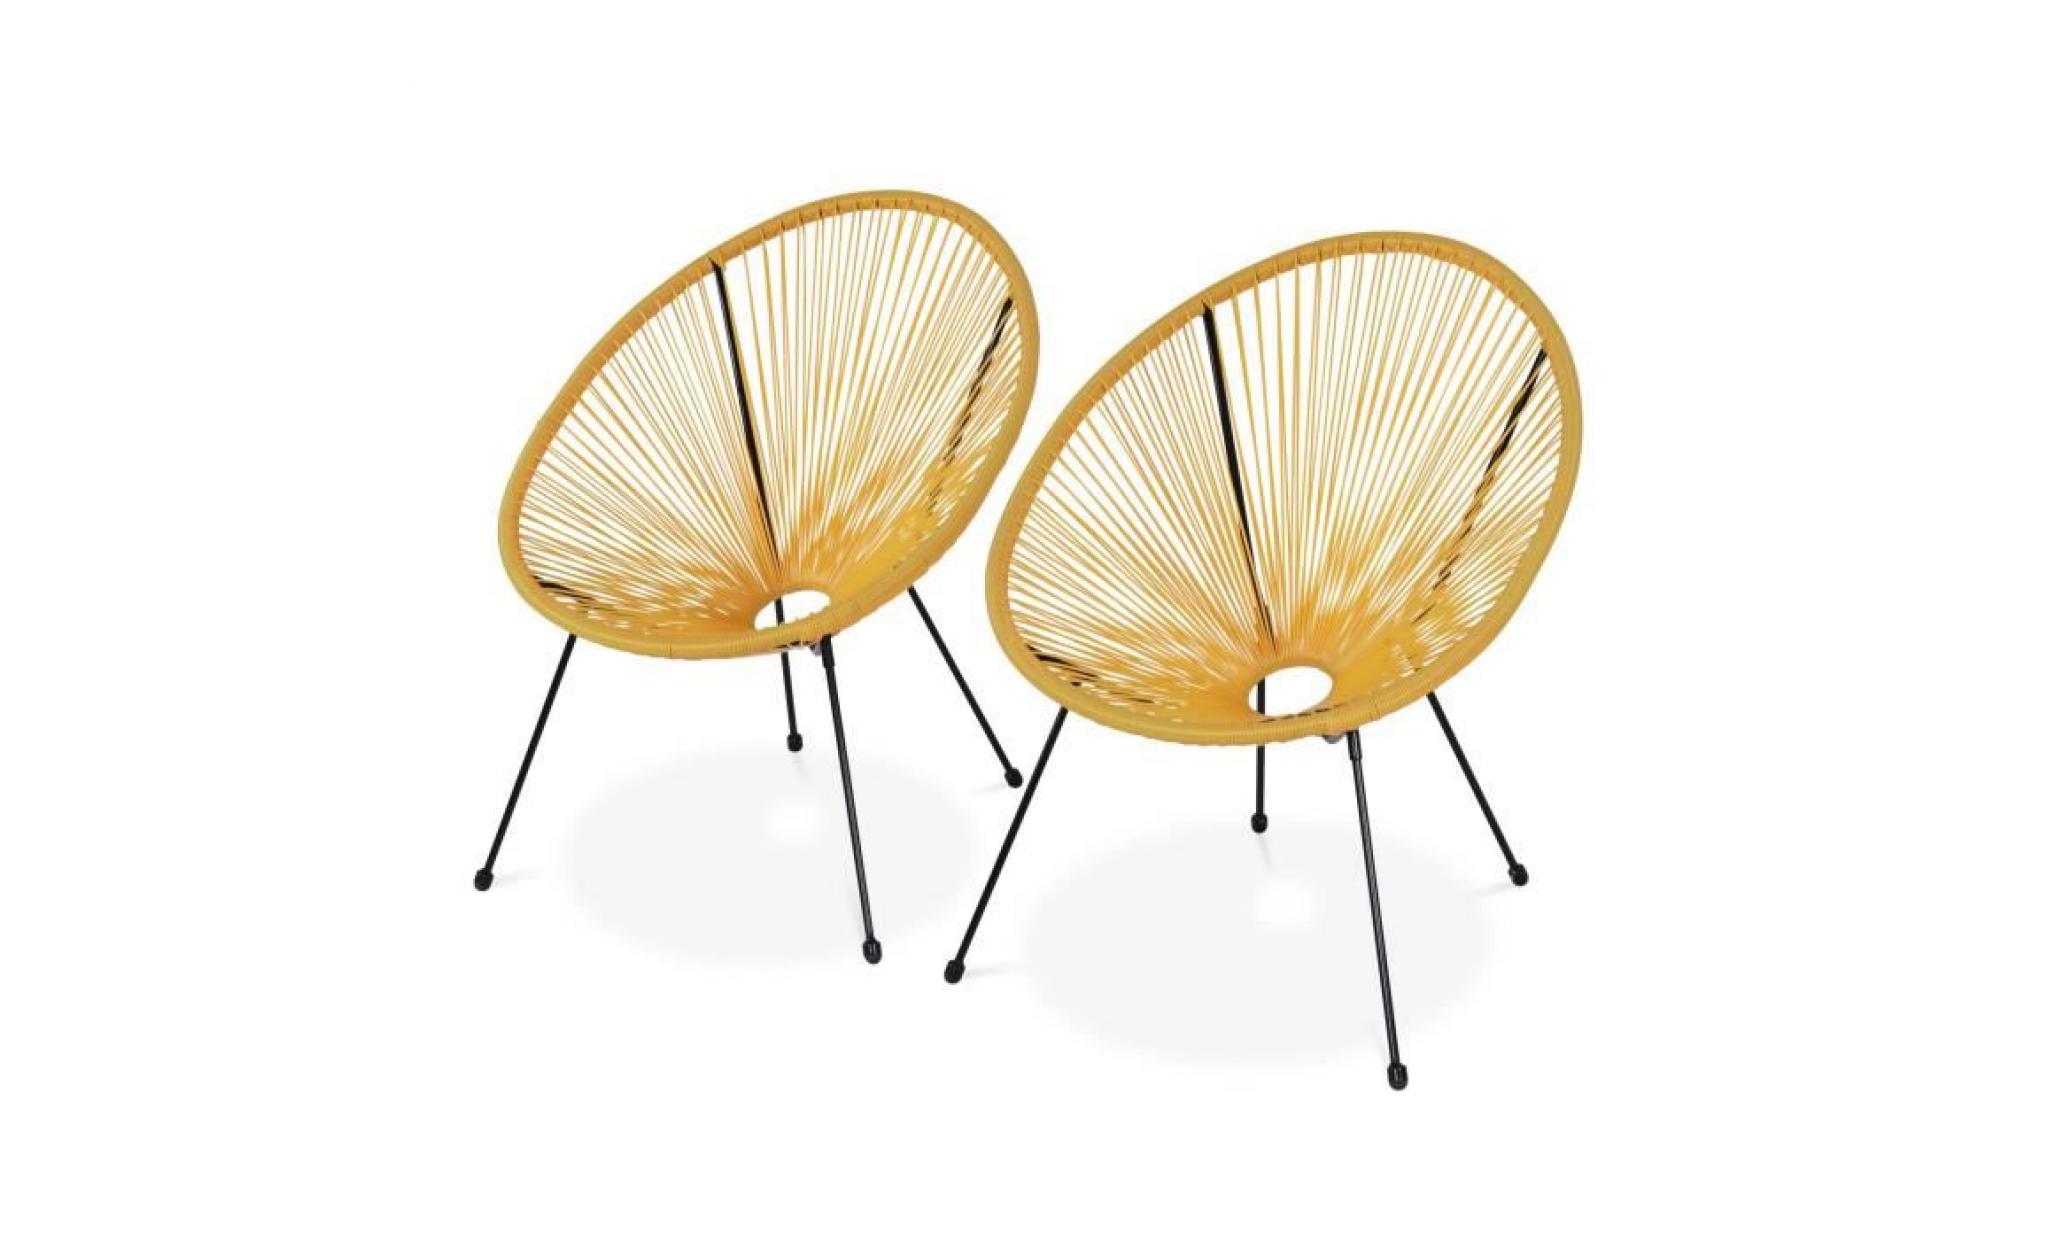 lot de 2 fauteuils design oeuf   acapulco jaune   fauteuils 4 pieds design rétro, cordage plastique, intérieur / extérieur